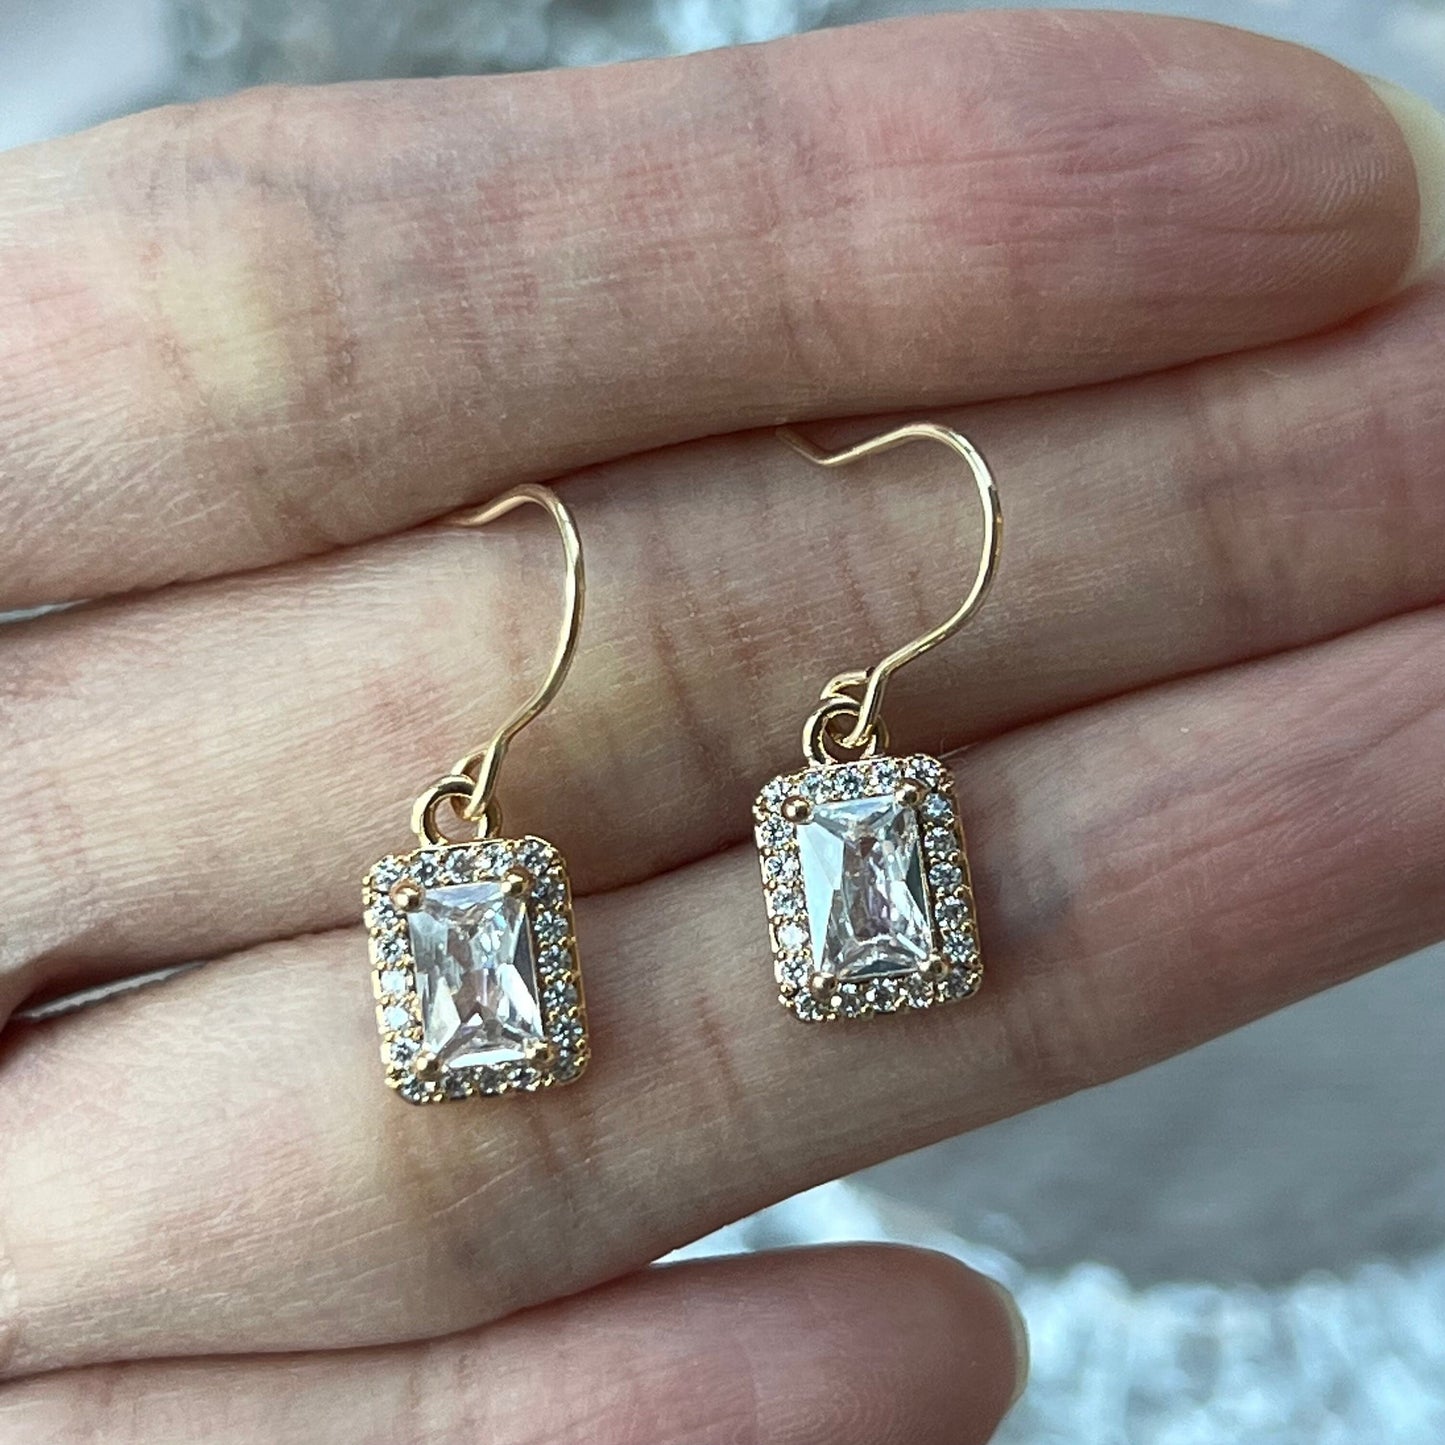 14k Gold-filled drop earrings, crystal dangle earrings, dainty gold lace earrings, classic teardrop rectangle cz earrings, minimalist gift